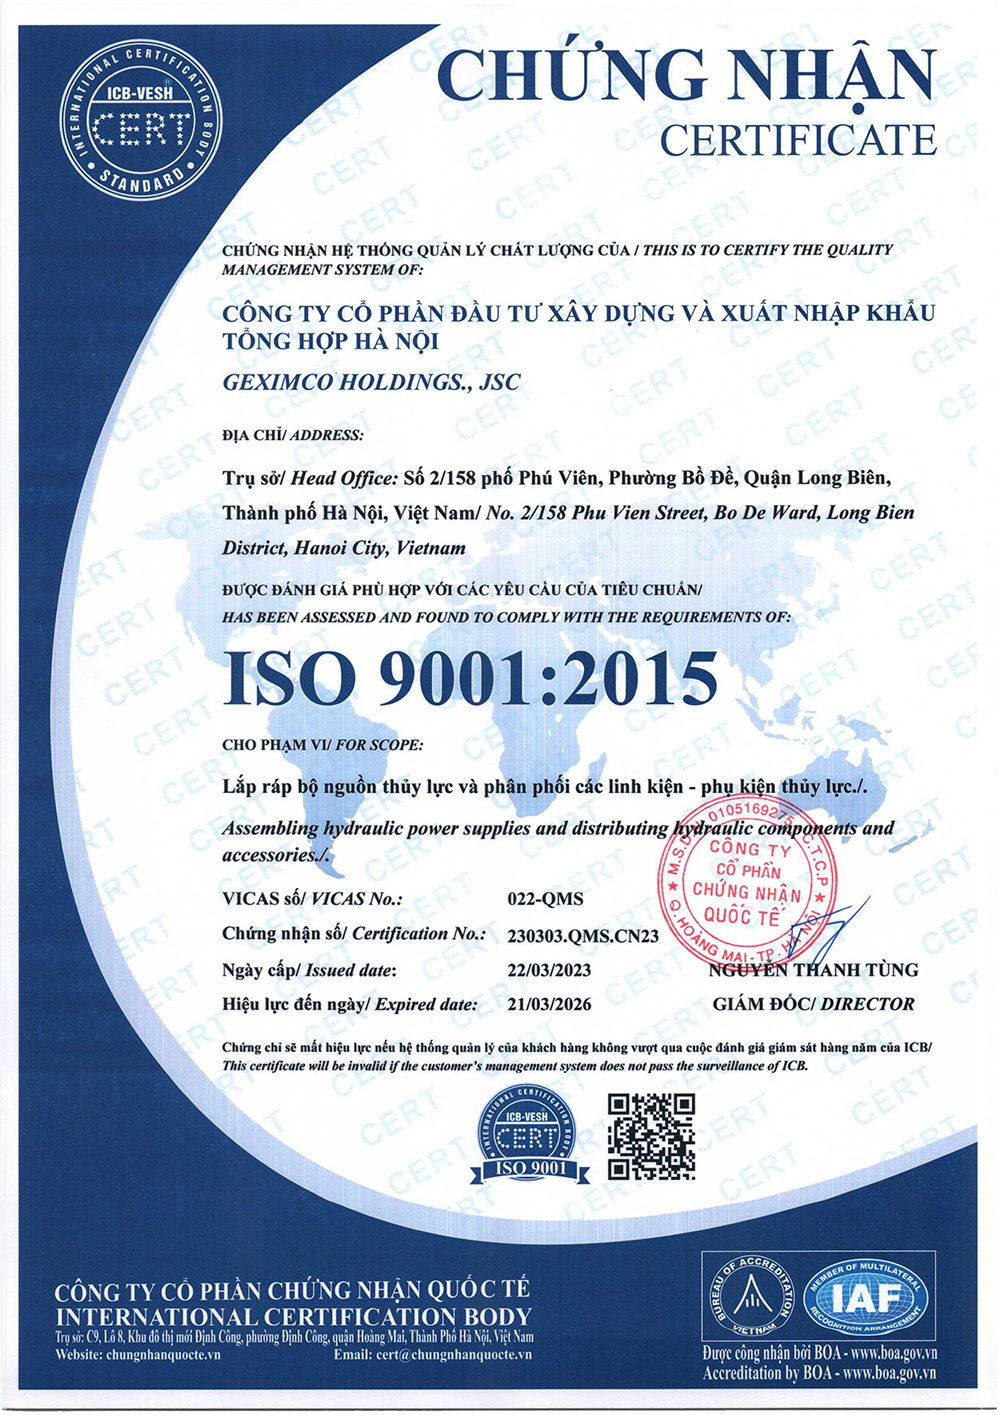 Geximco đạt chứng nhận hệ thống quản lý chất lượng ISO 9001:2015